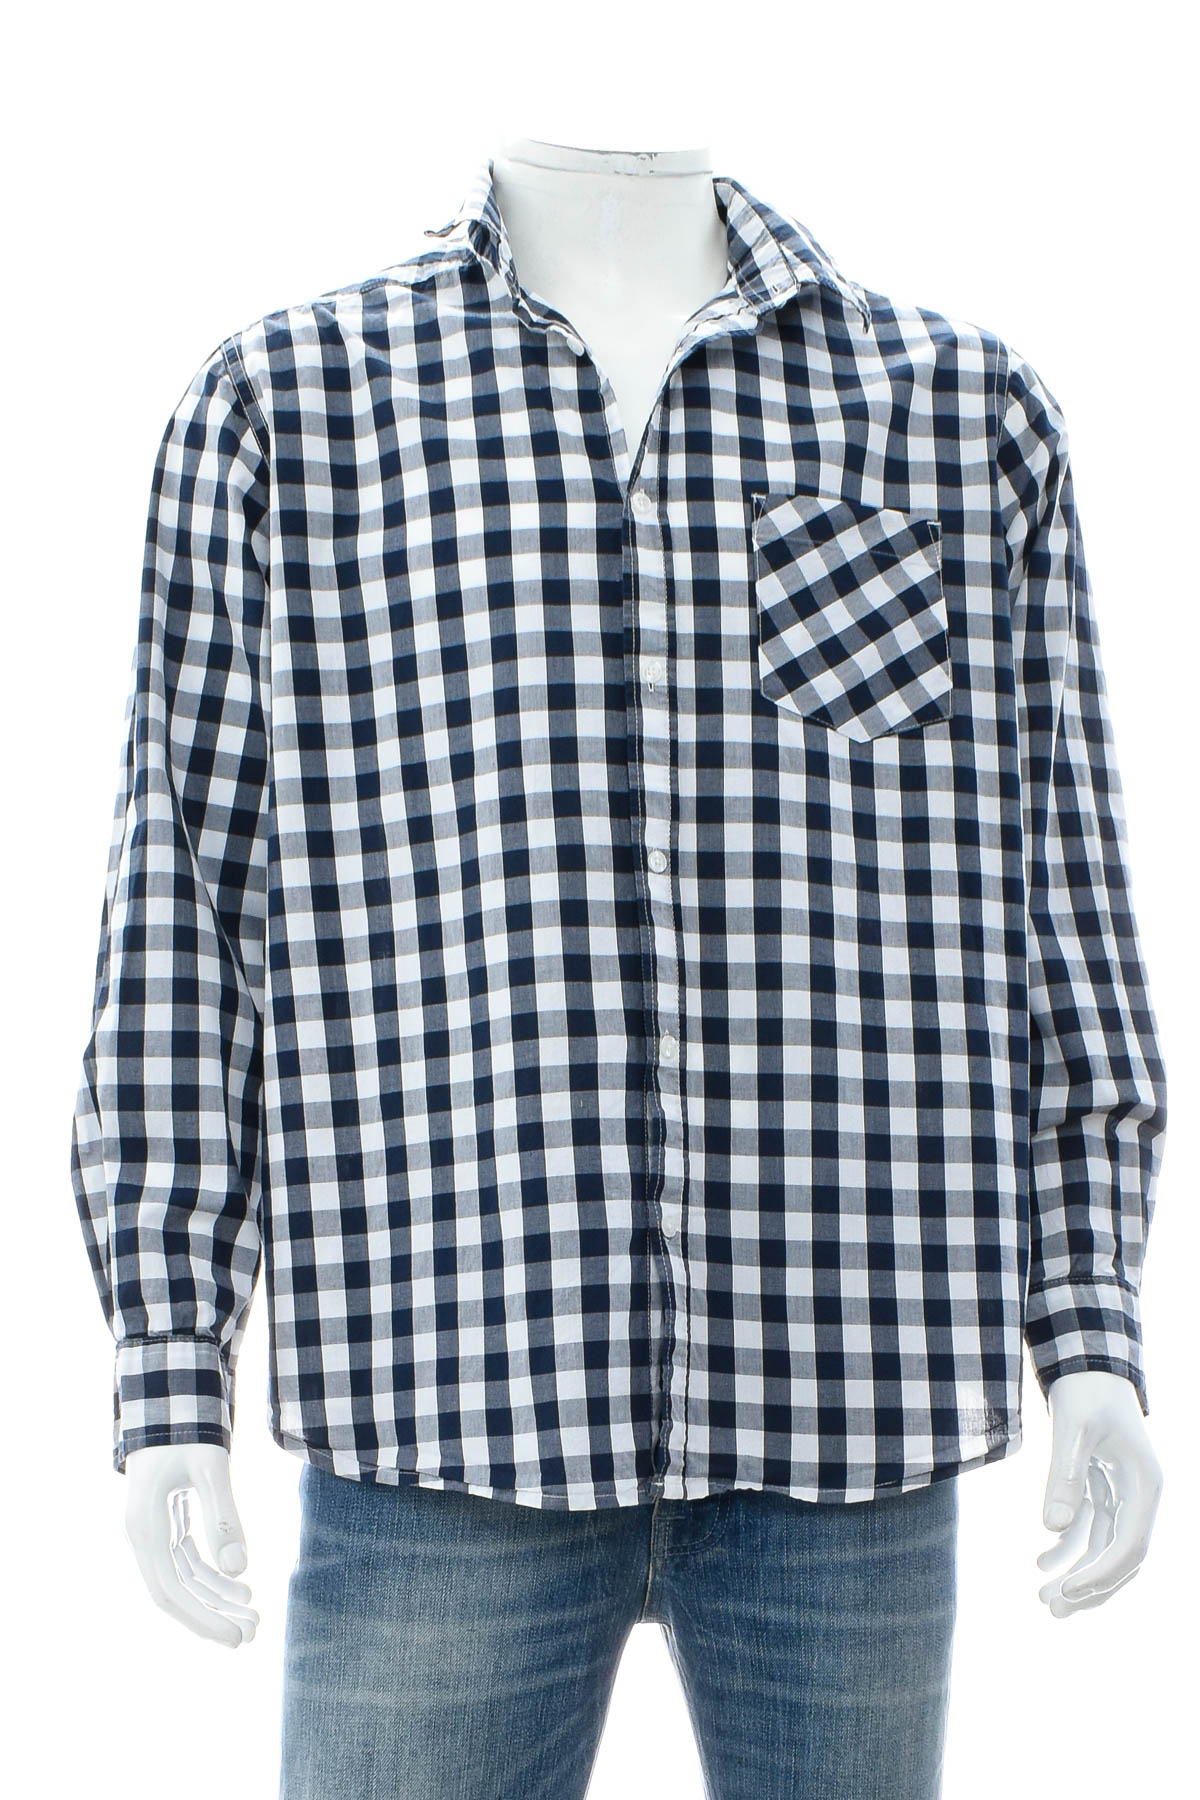 Ανδρικό πουκάμισο - Identic - 0